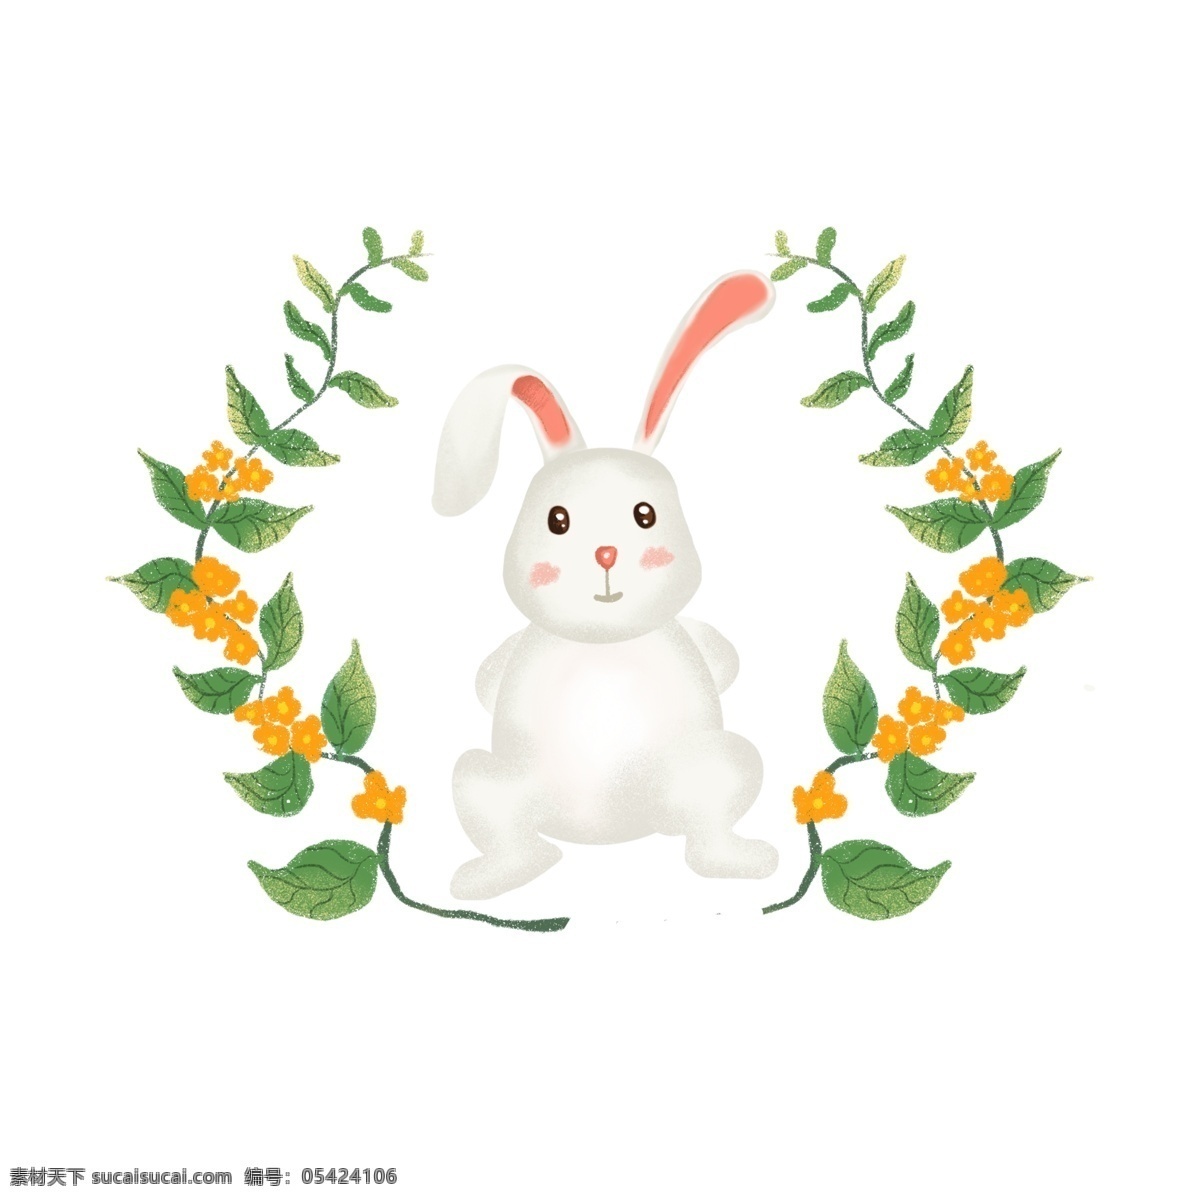 复活节 兔子 元素 图案 复活节兔子 兔子元素 动物 复活节元素 植物 可爱兔子 卡通兔子